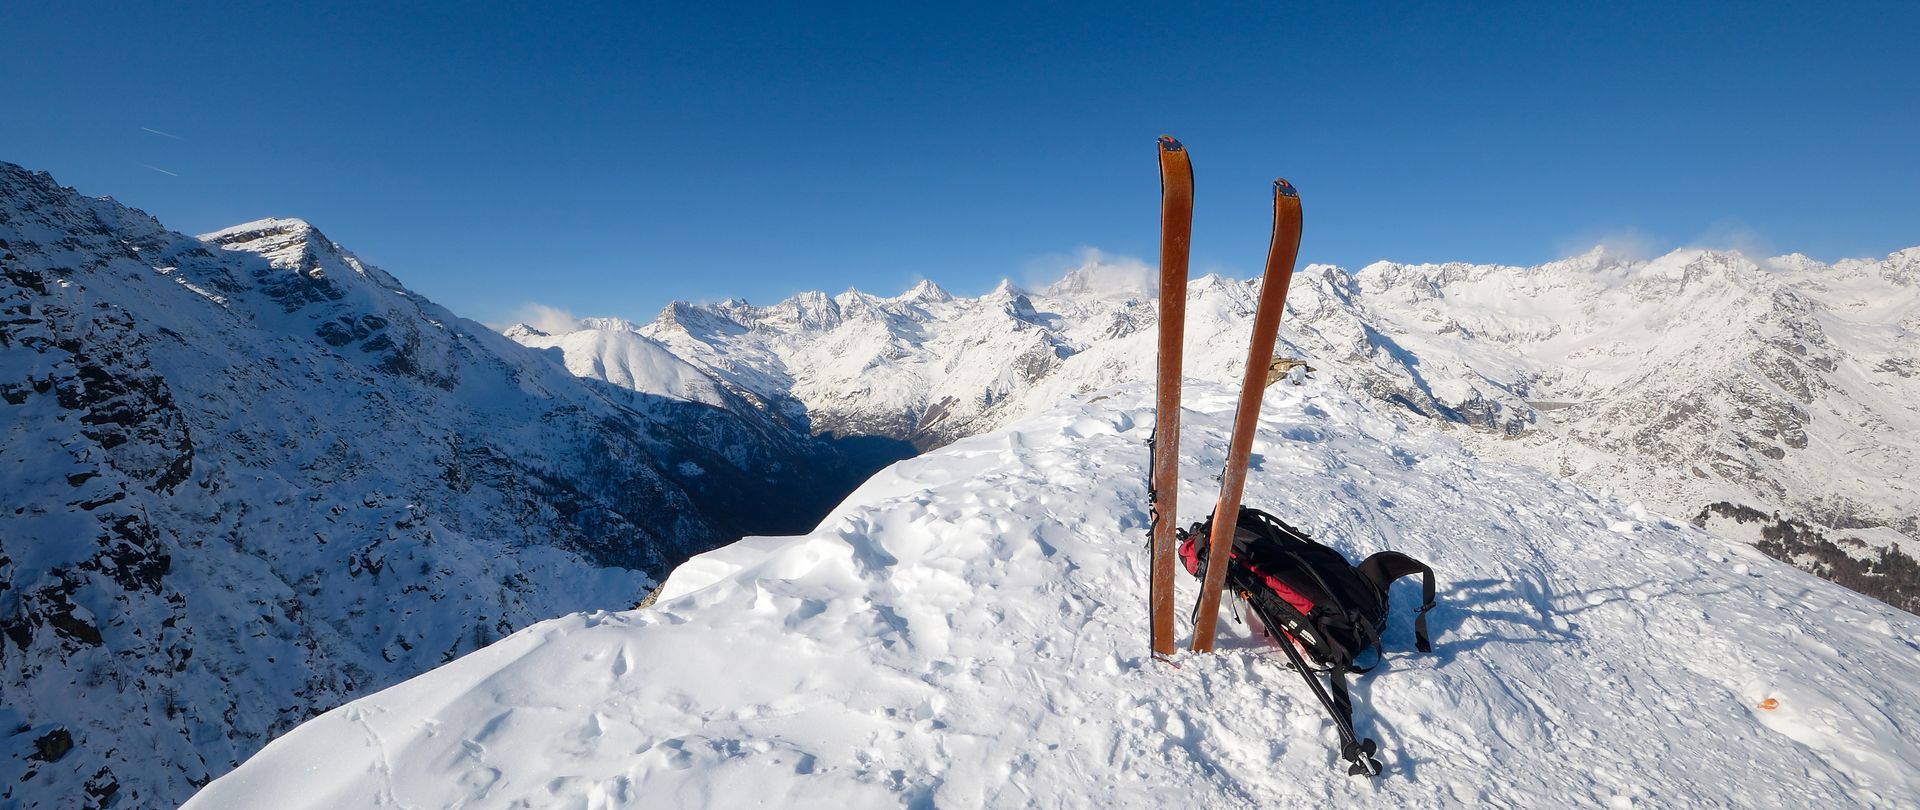 Le Grand Paradis à ski (4061 m)